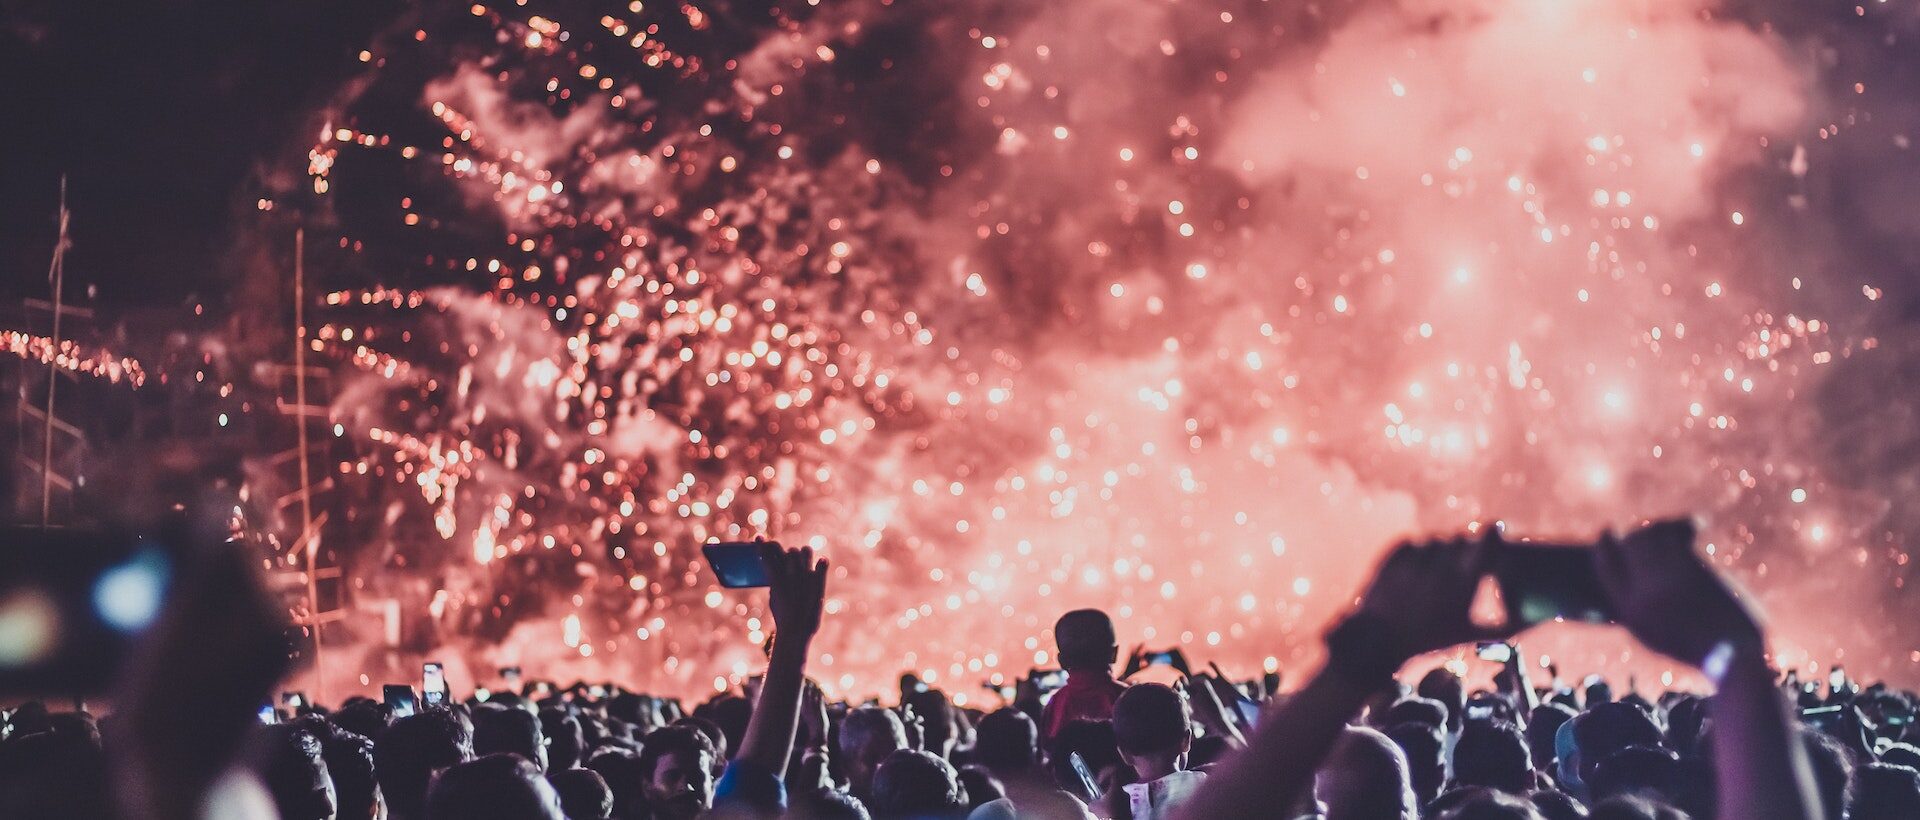 Bild von einer Party mit Feuerwerk in der Luft